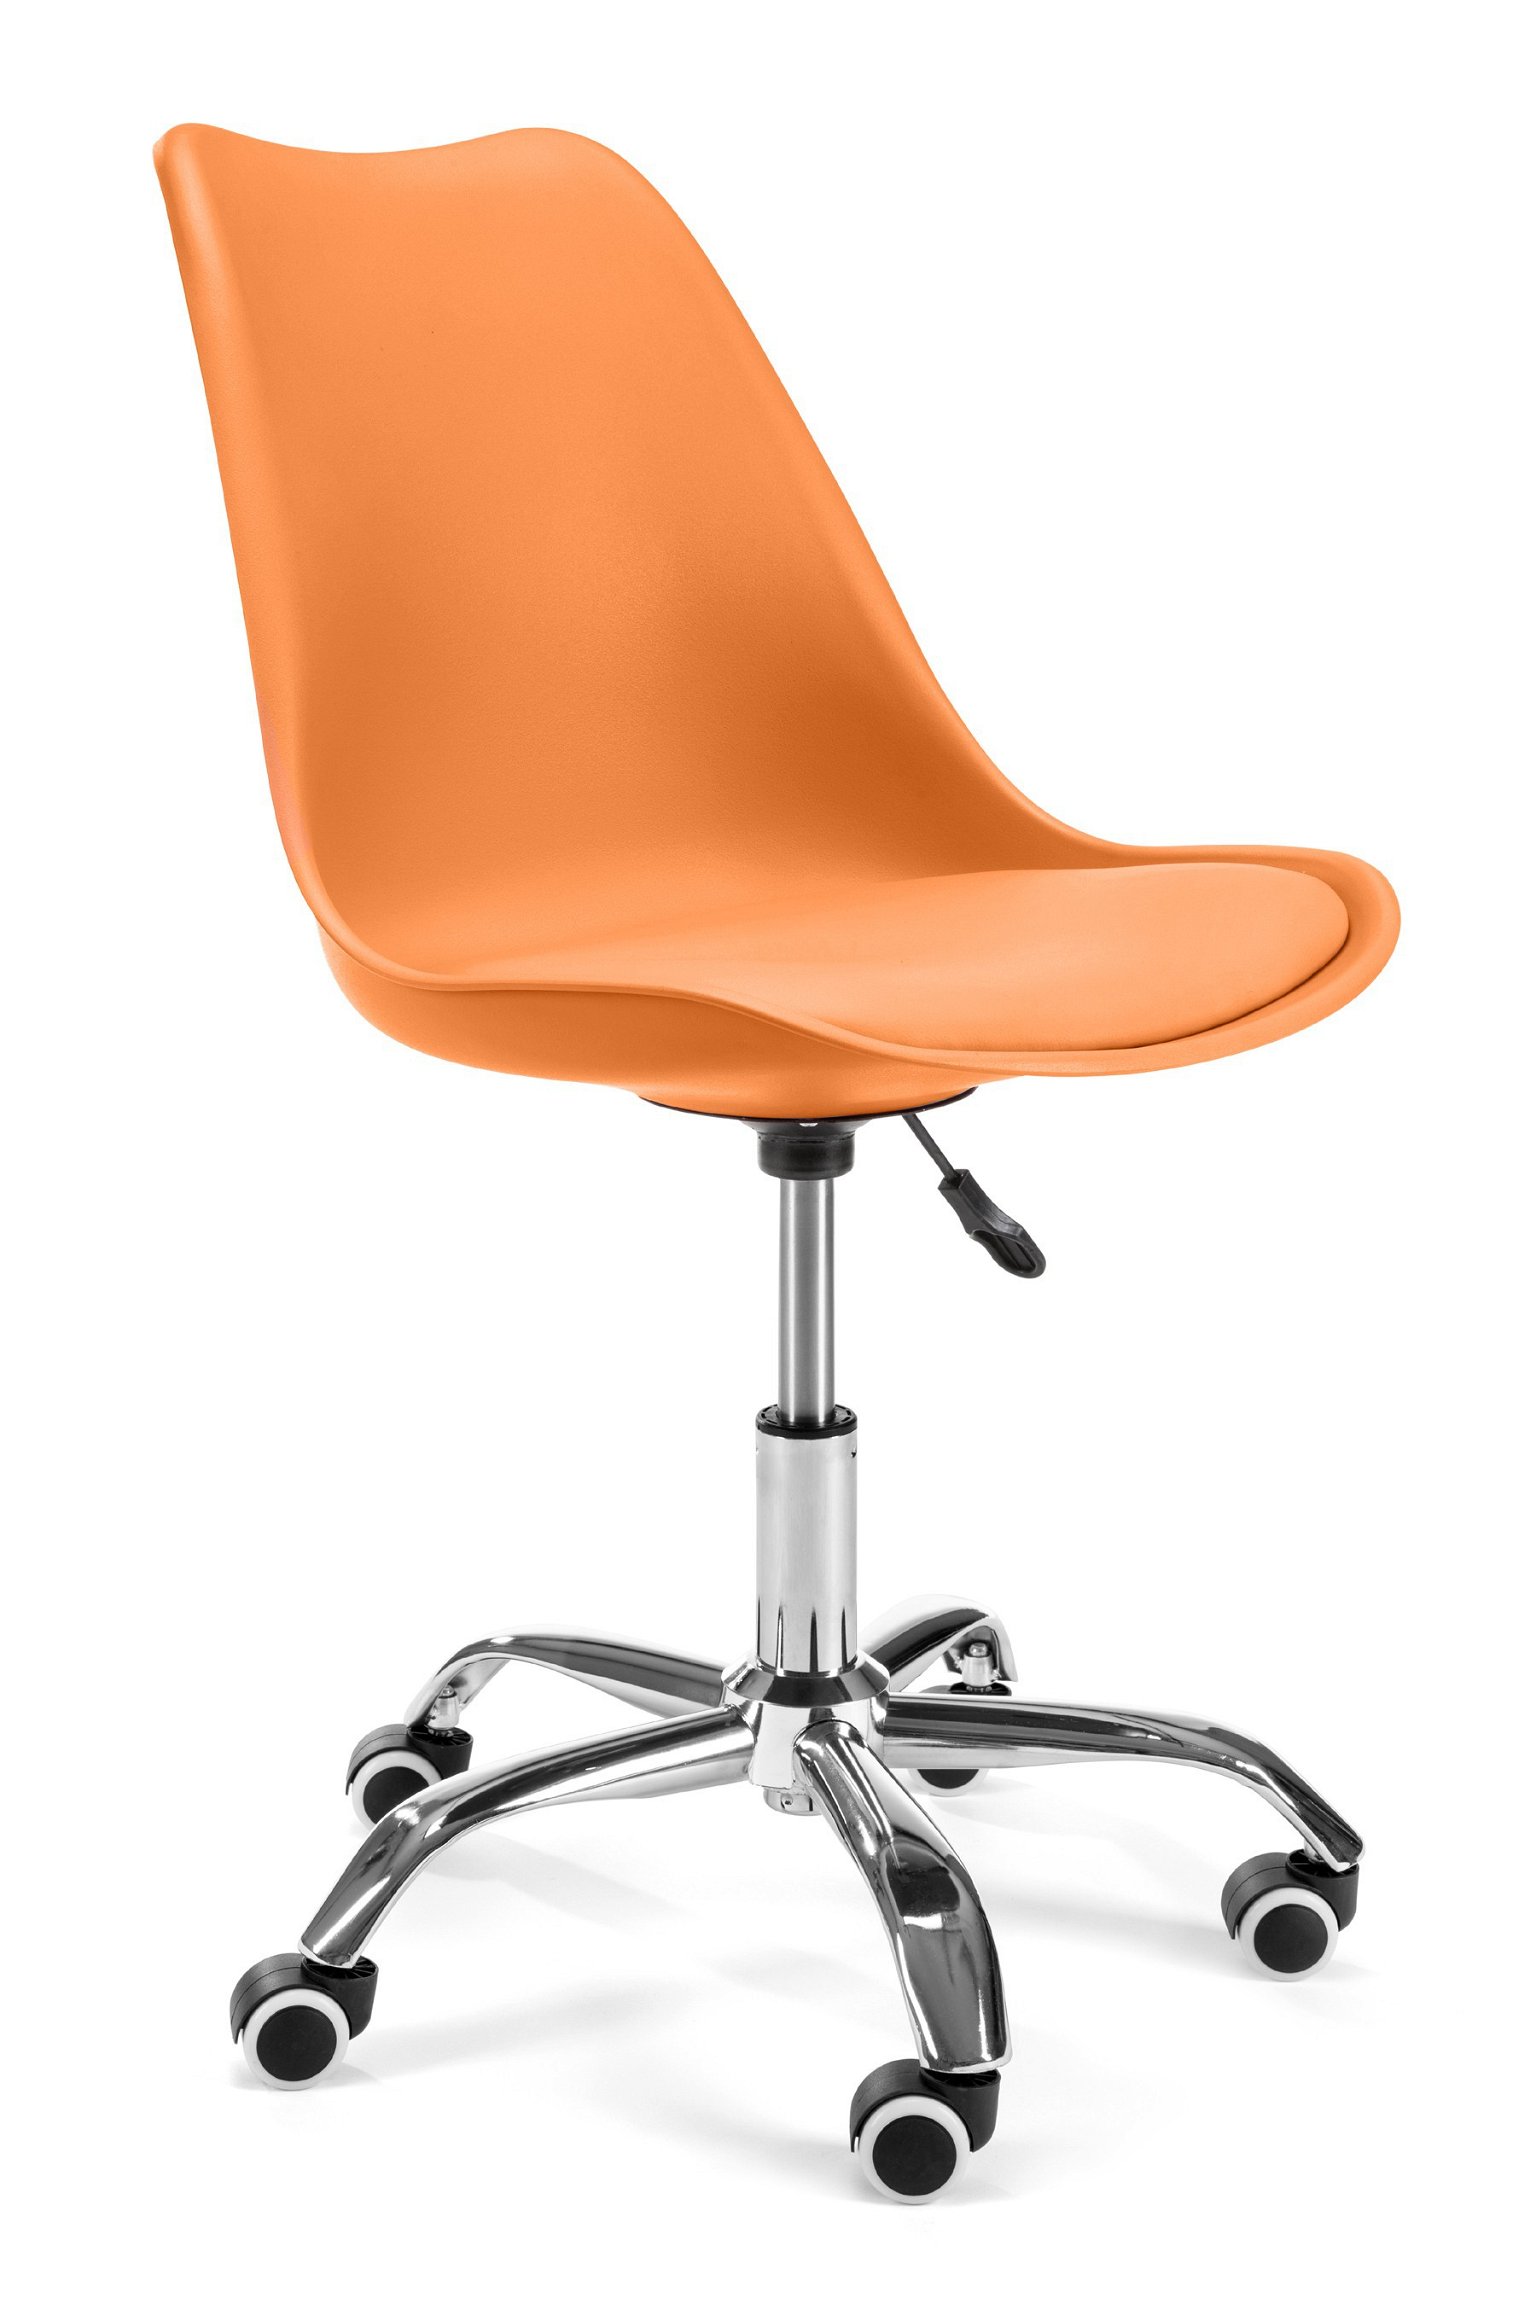 Vaikiška kėdė FD005, oranžinė - 1